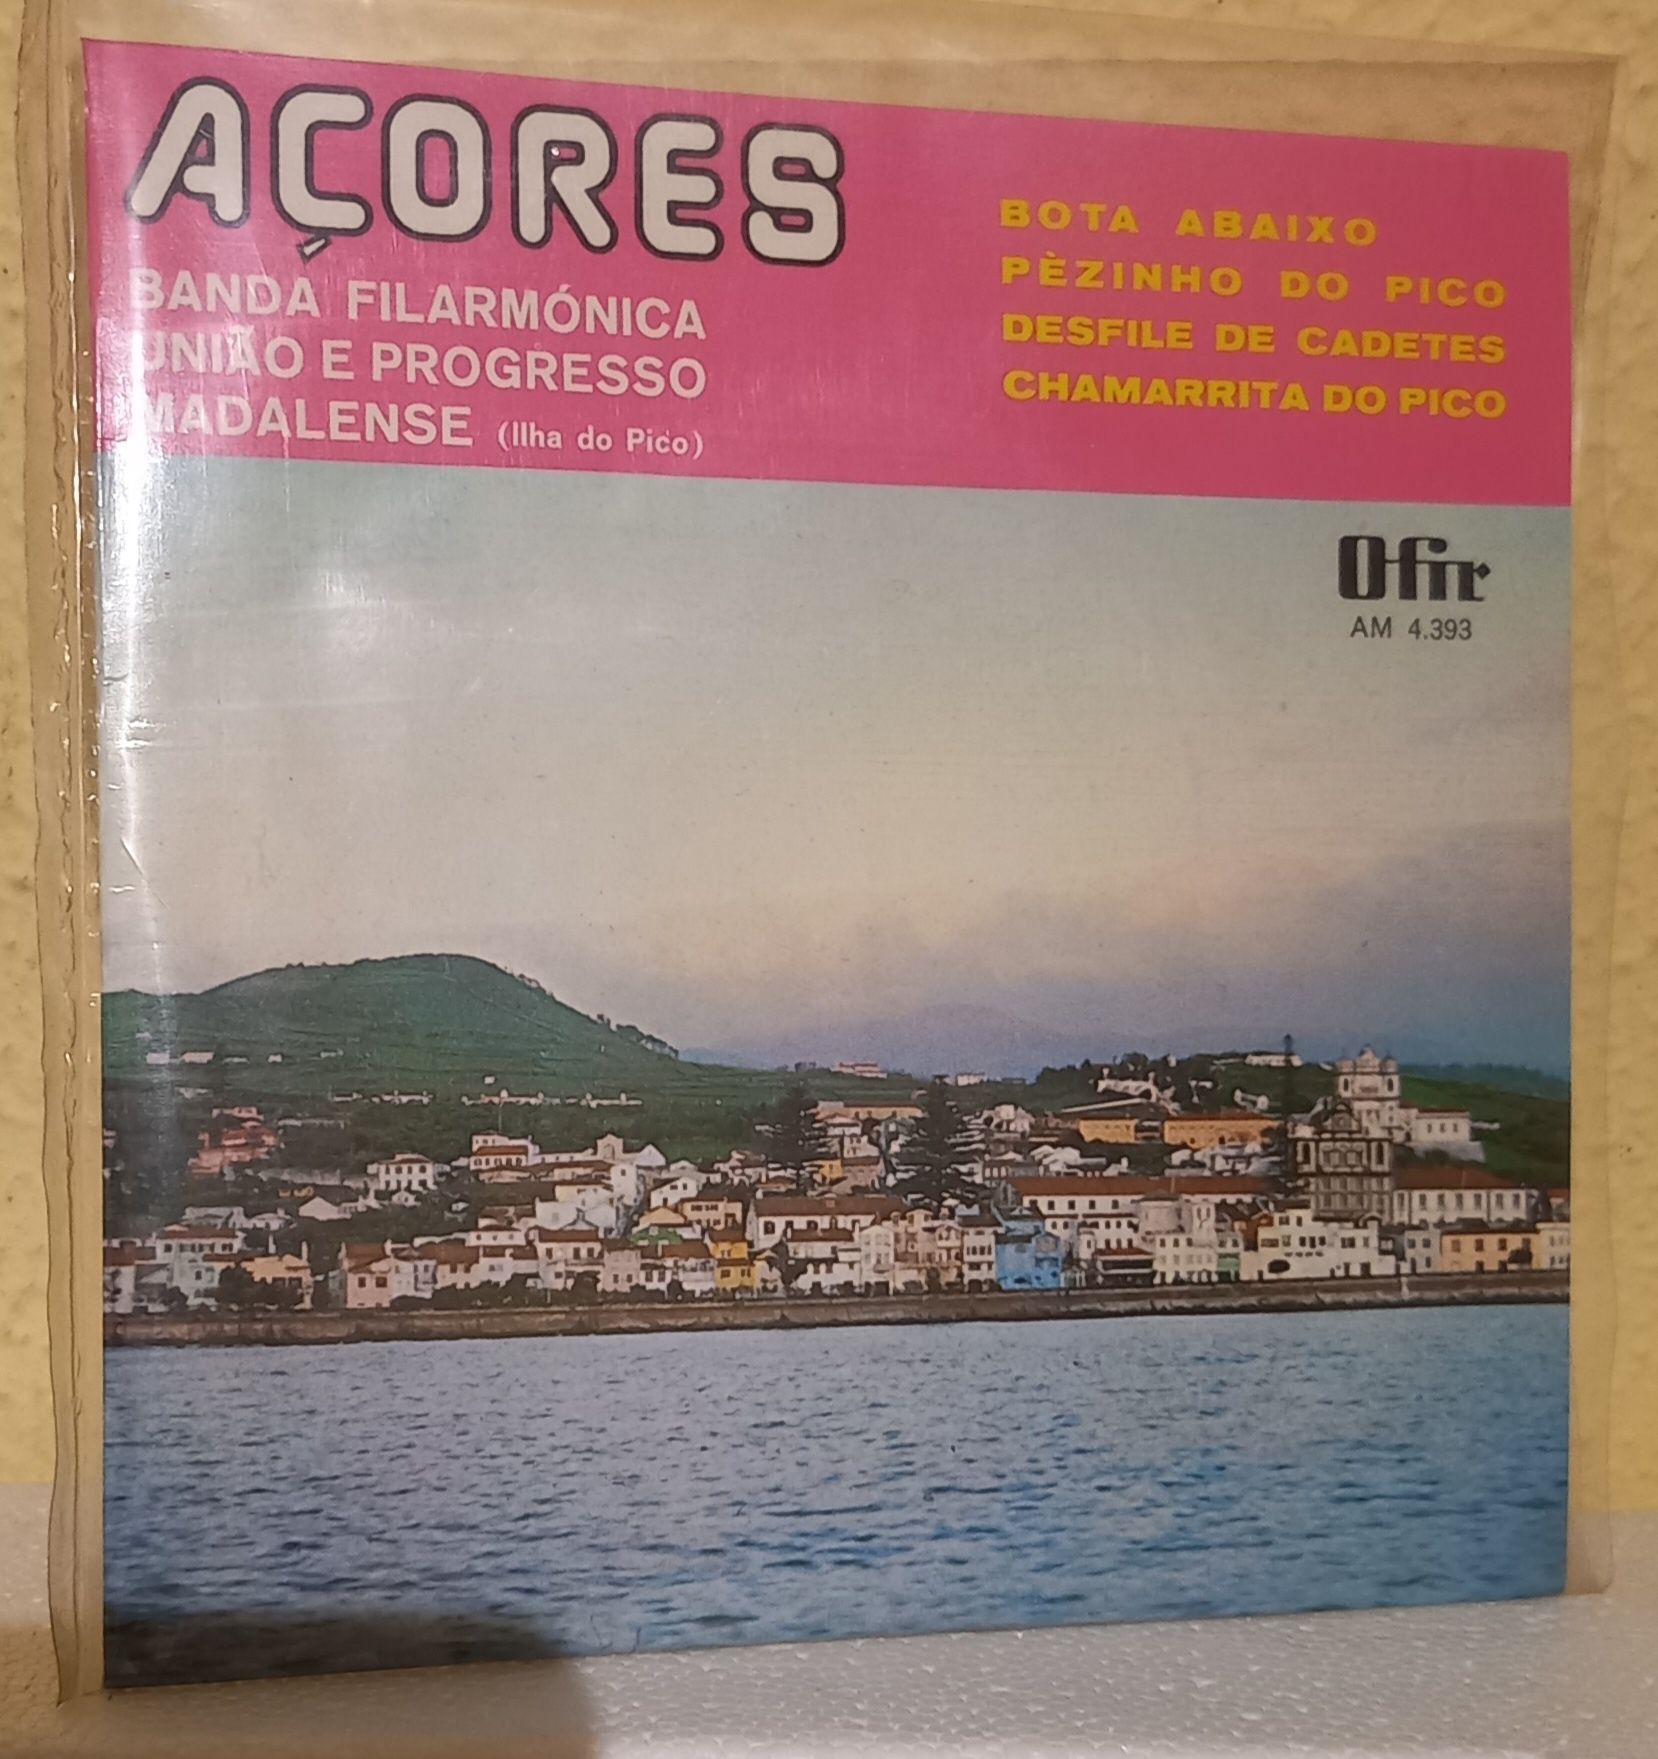 Disco de vinil, Banda Filarmónica União e Pogresso Madalense, Açores.